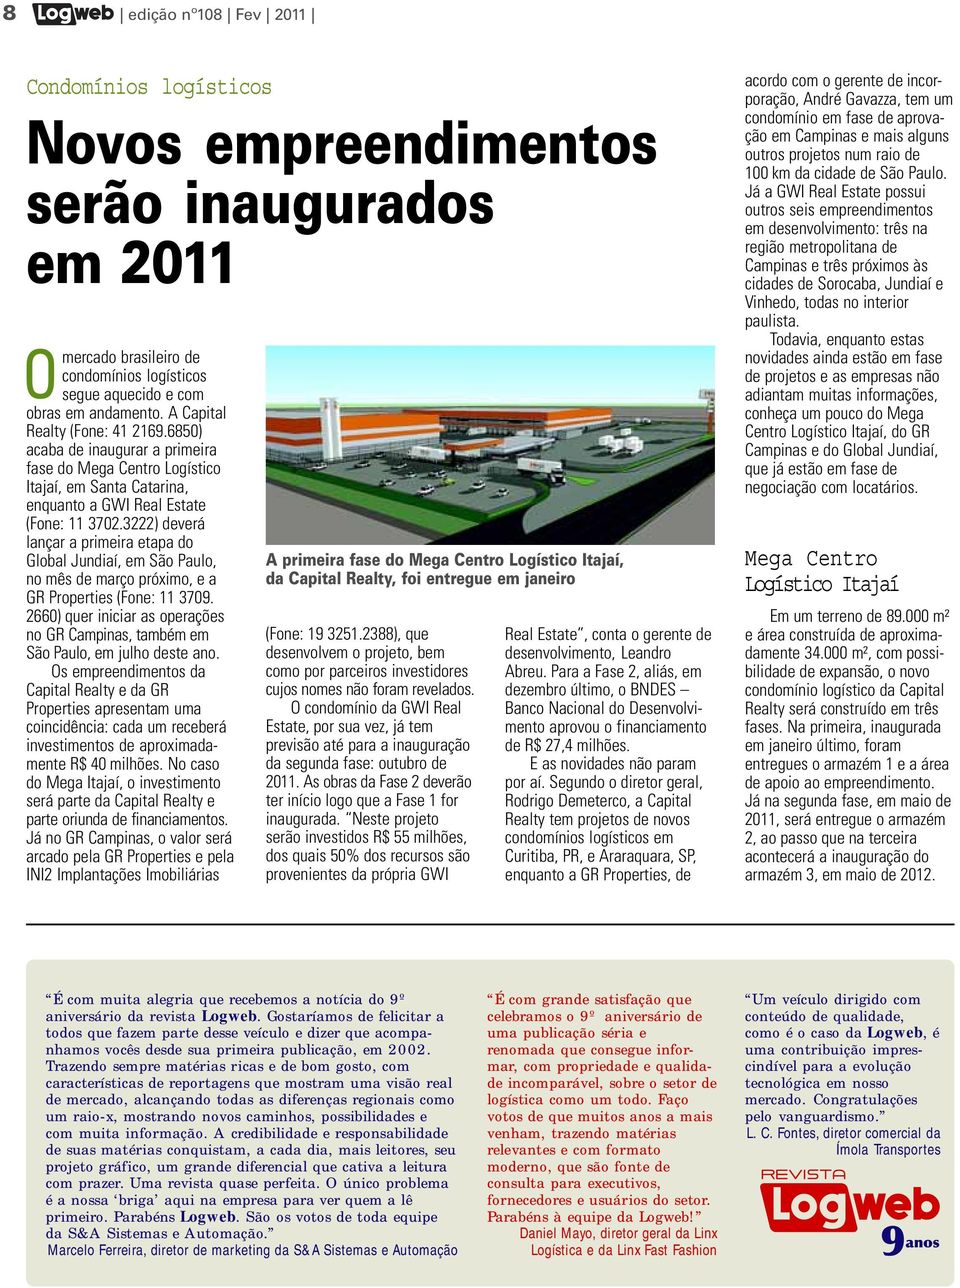 3222) deverá lançar a primeira etapa do Global Jundiaí, em São Paulo, no mês de março próximo, e a GR Properties (Fone: 11 3709.